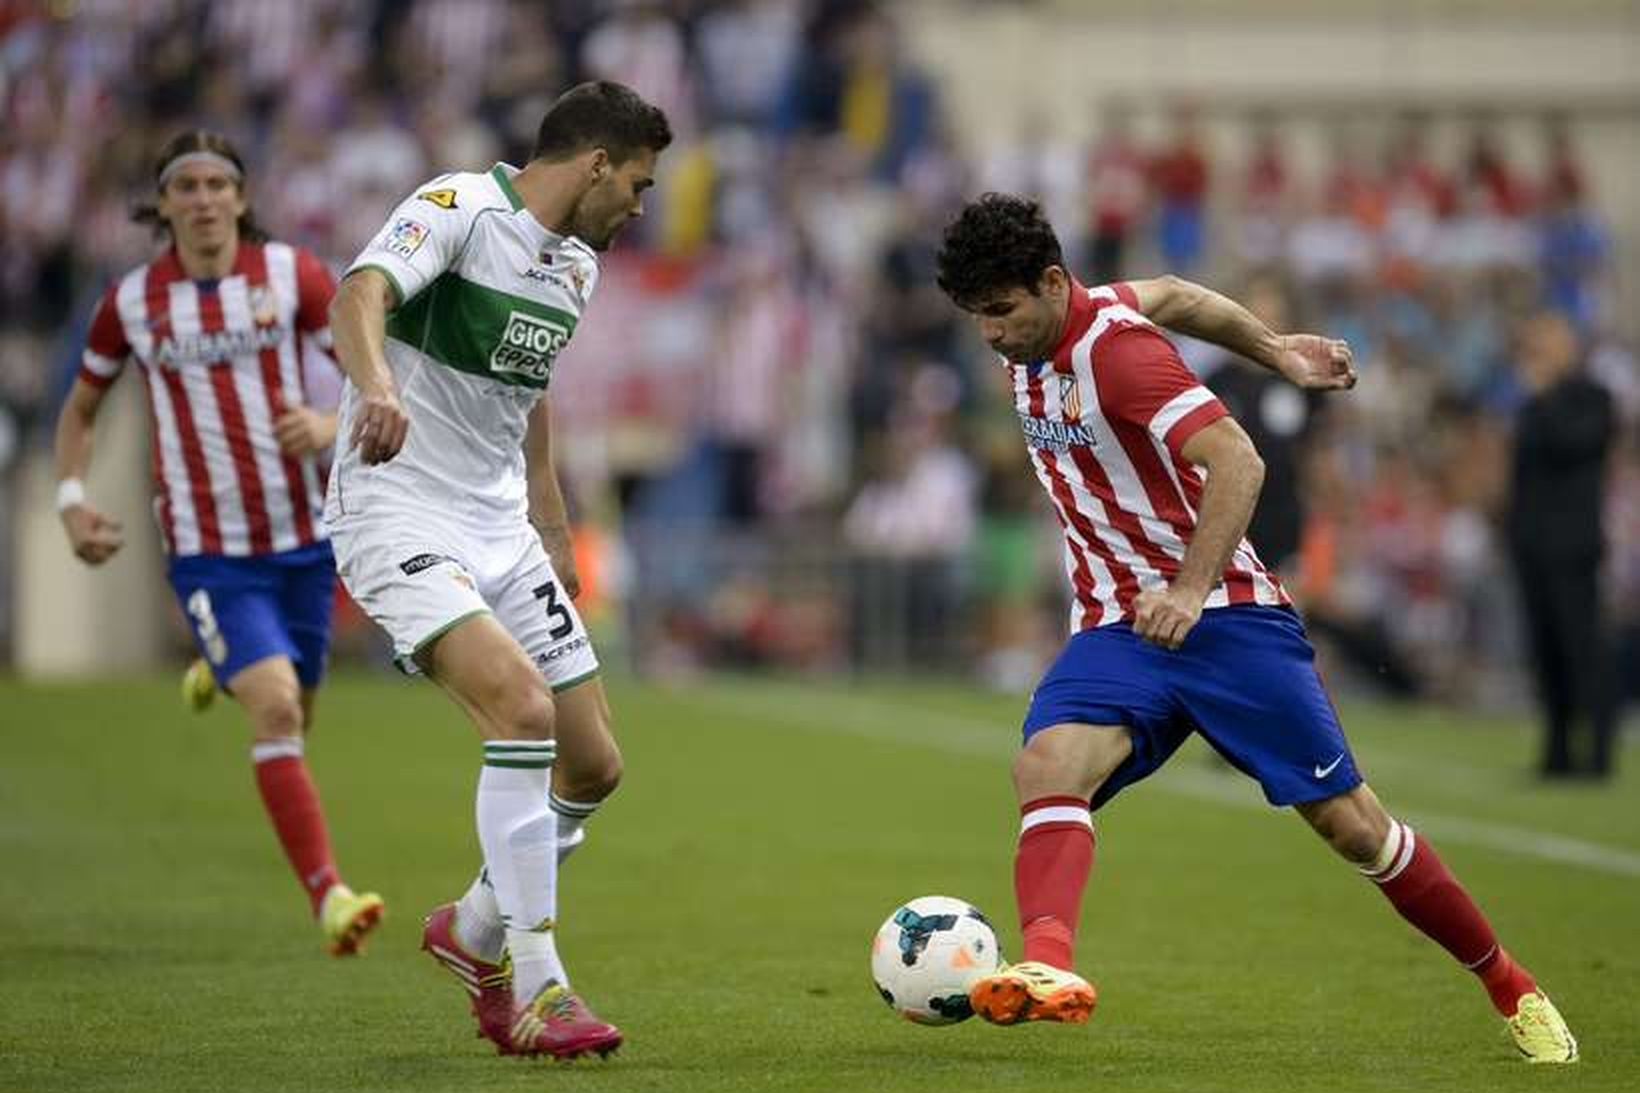 Diego da Silva Costa innsiglaði sigur Atlético Madrid í kvöld.